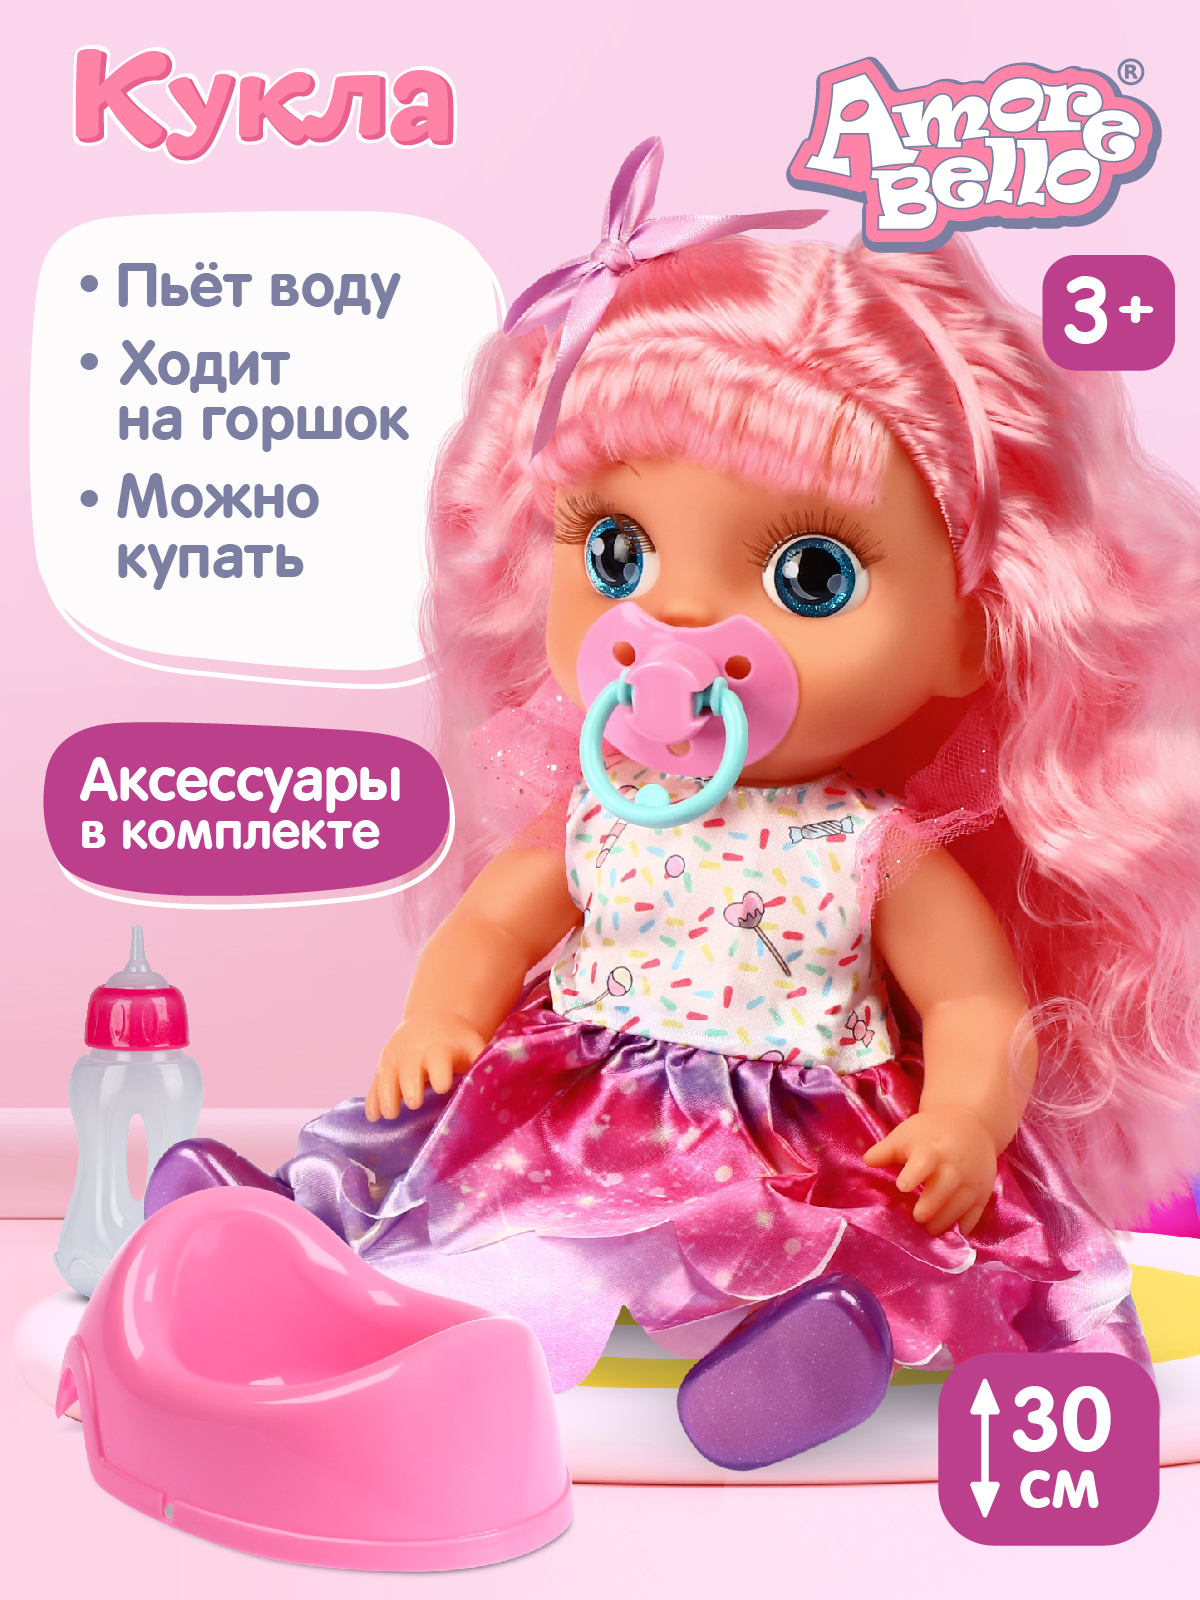 Кукла с розовыми волосами Amore Bello бутылочка розовый горшок соска JB0211645